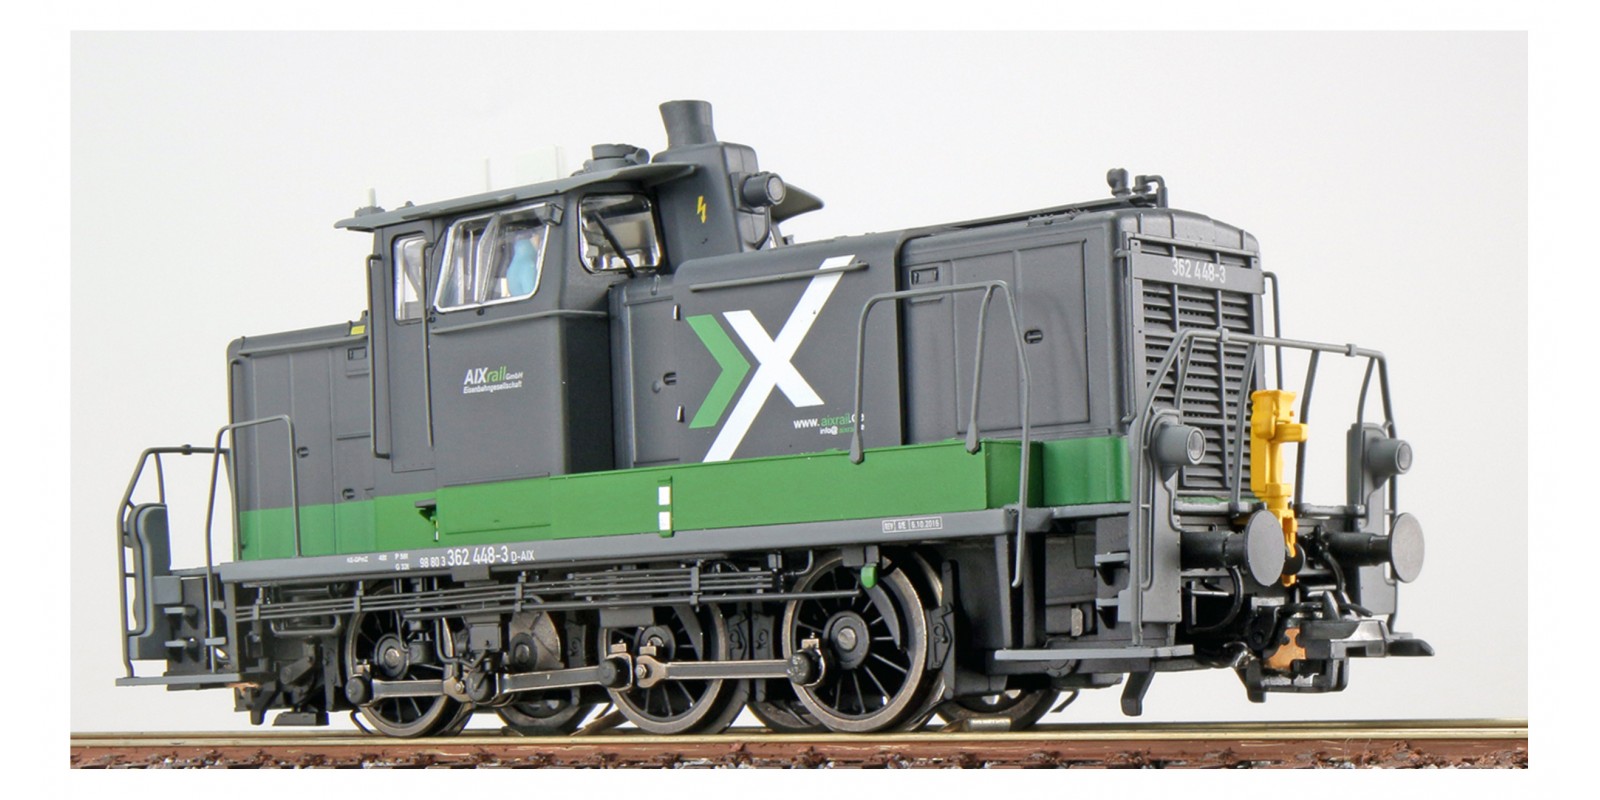 ES31422 Diesel locomotive, 362 448 of the AIX, epoch VI with sound